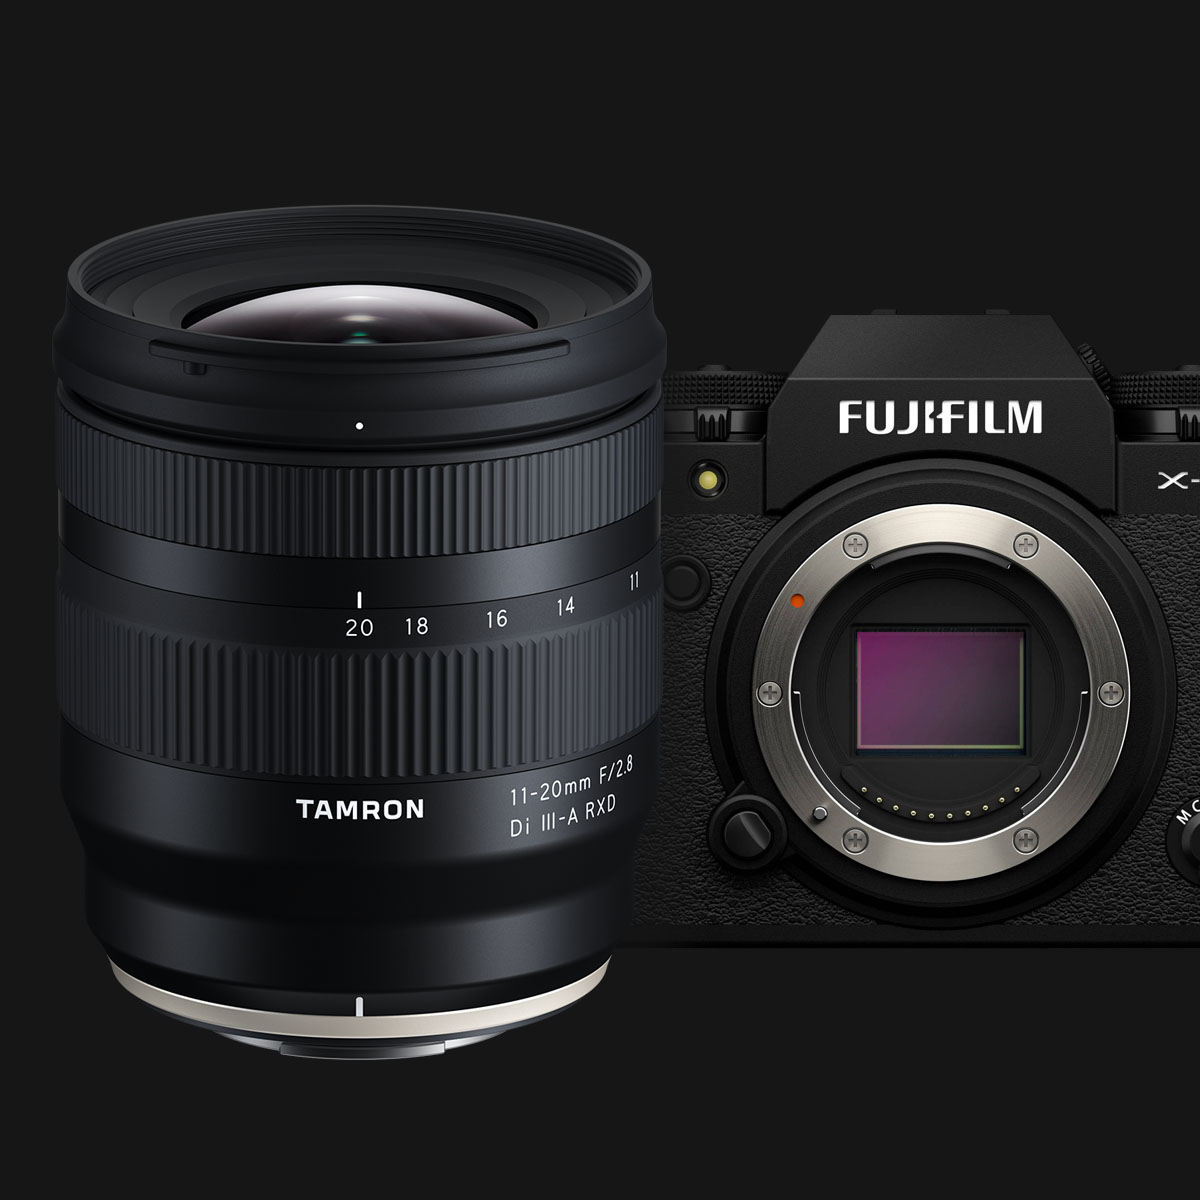 TAMRON ra mắt ống kính zoom góc siêu rộng 11-20mm F2.8 cho Fujifilm X-mount